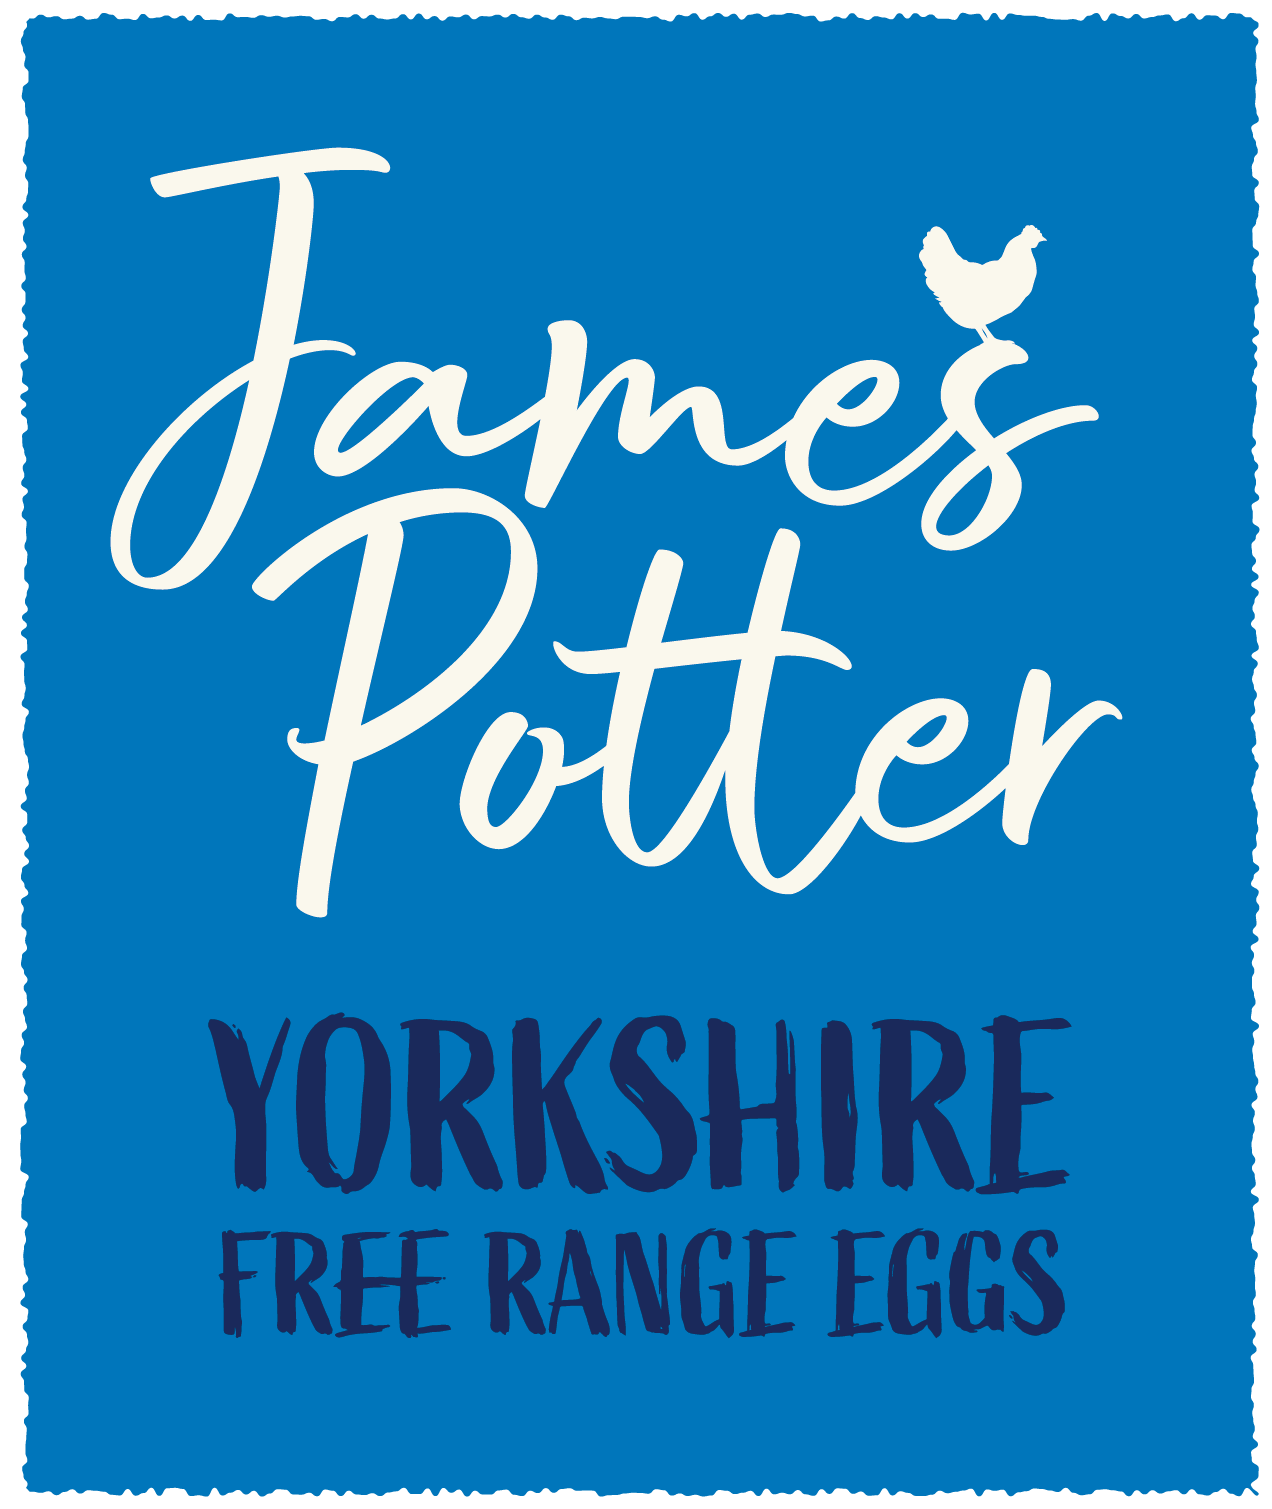 Yorkshire Farmhouse Eggs